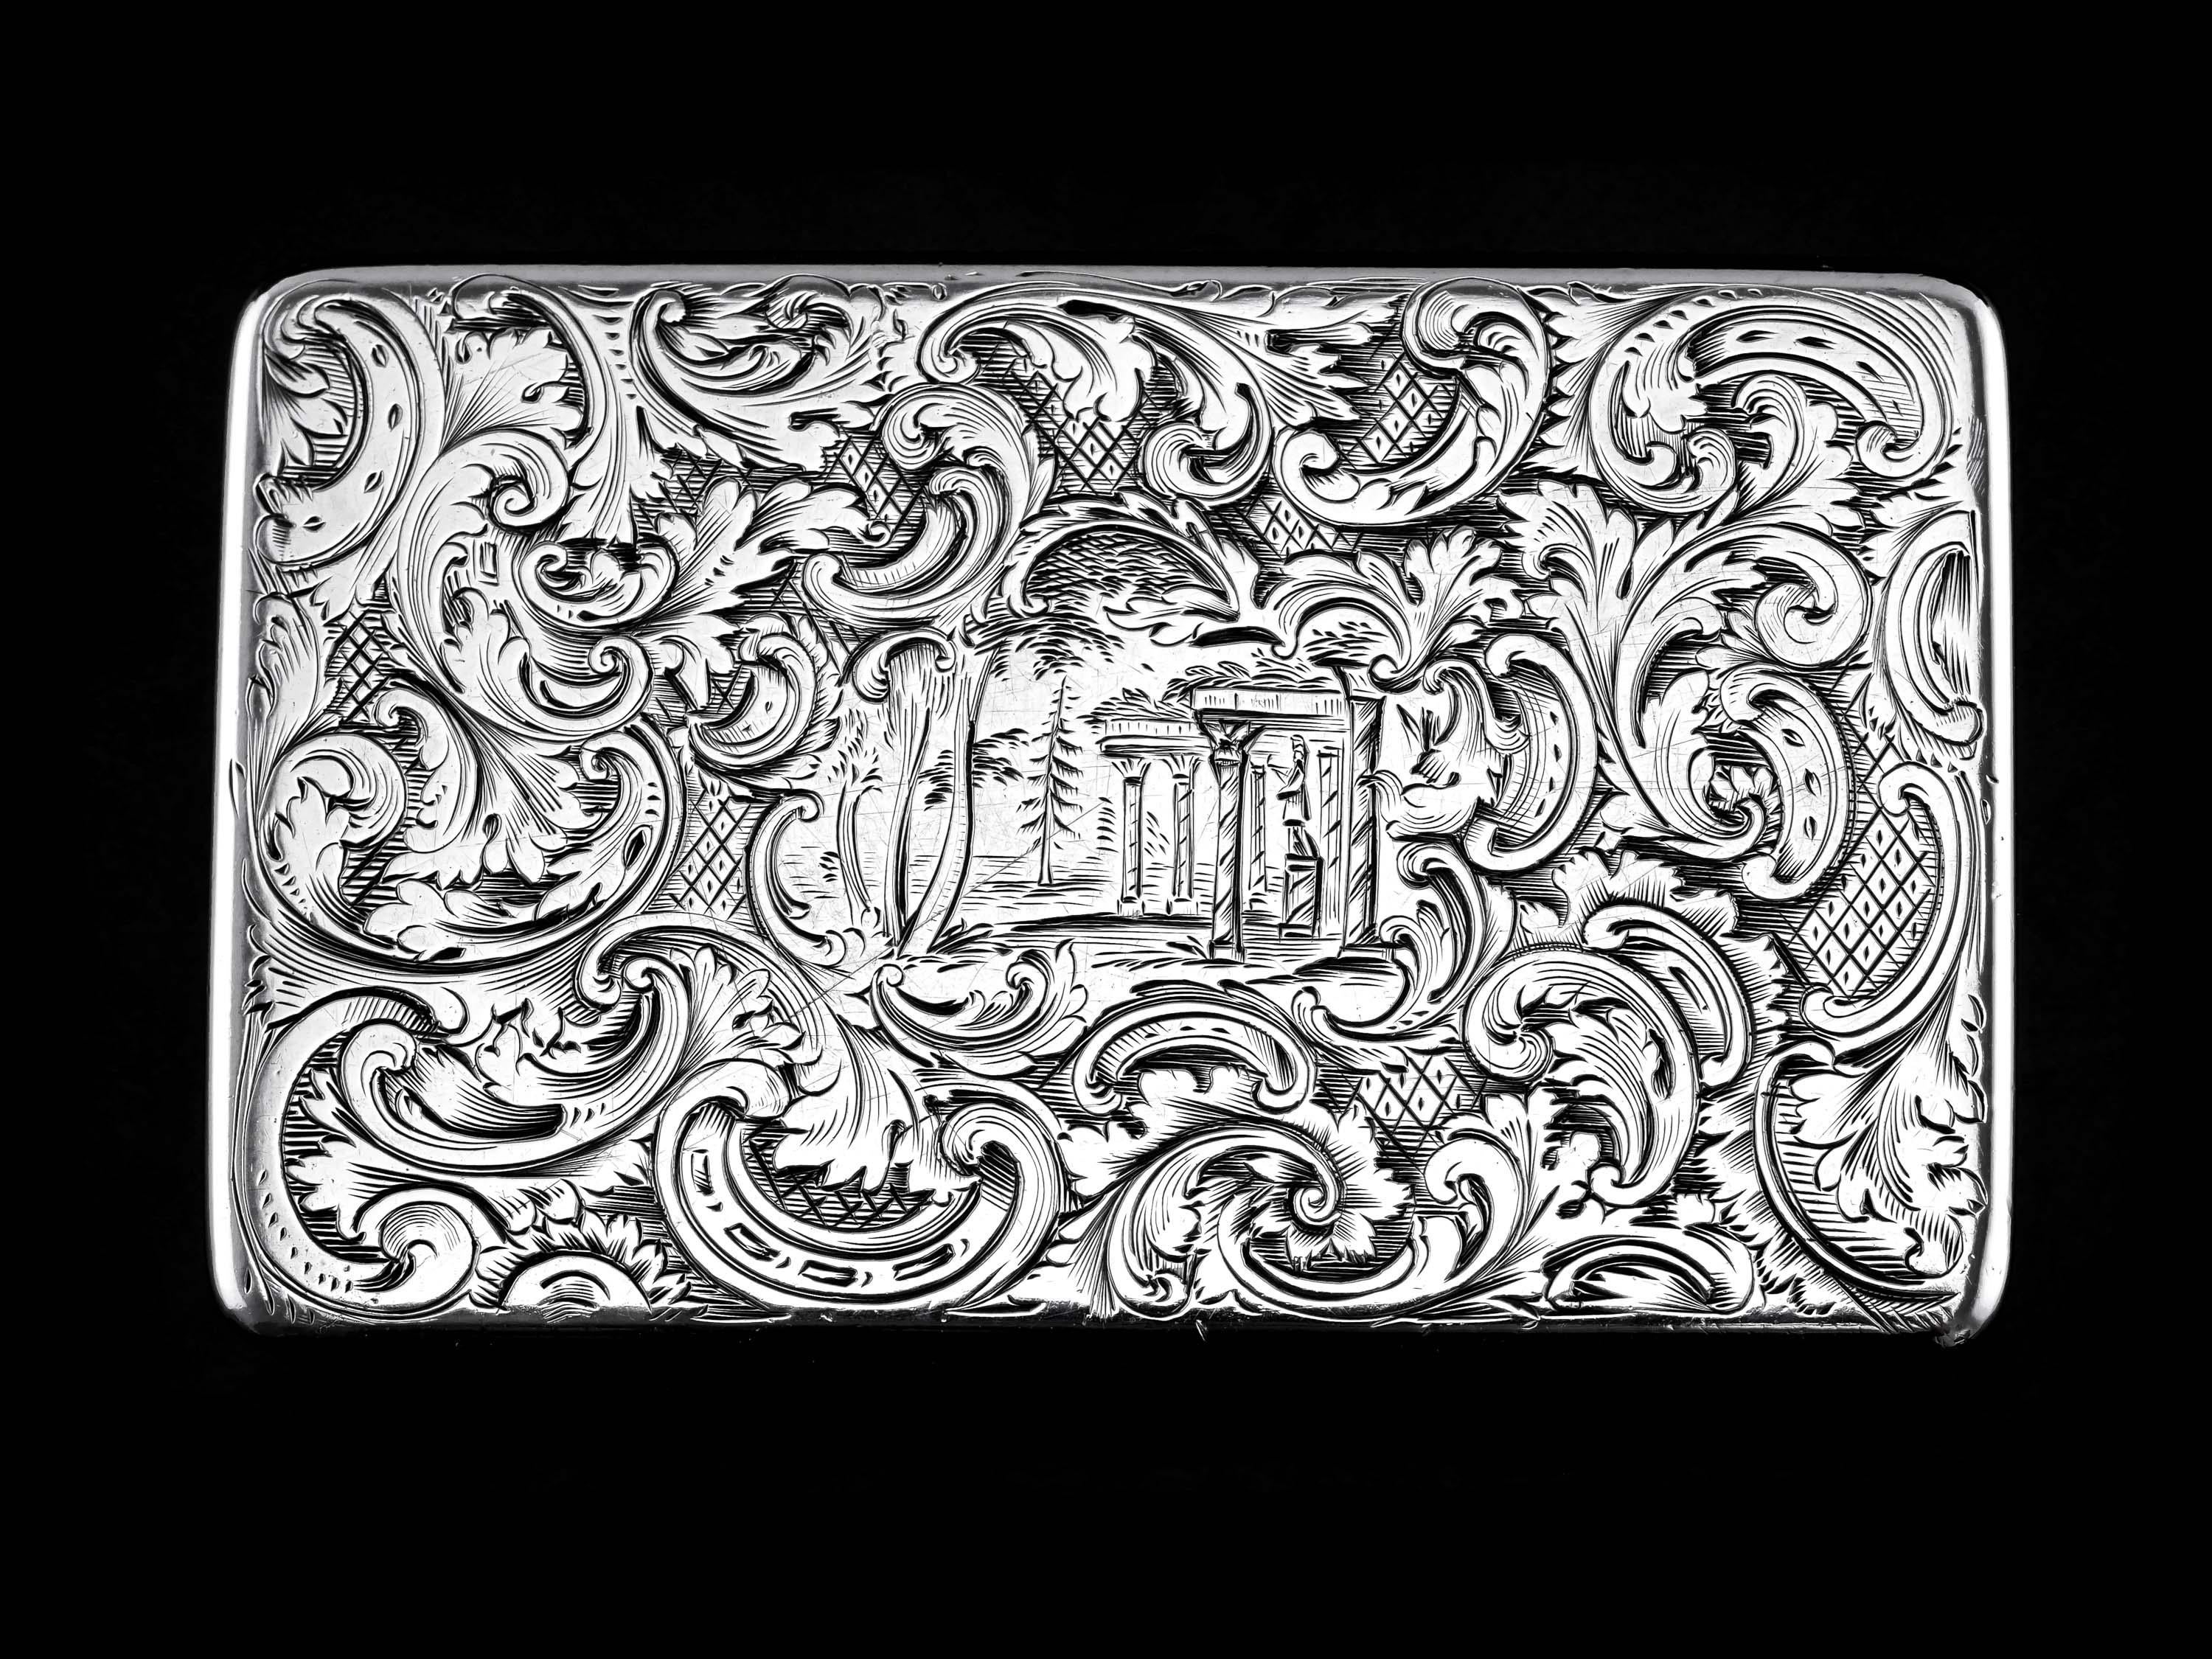 Antique Silver Snuff Box Hunting Scene Design - 1837 For Sale 11